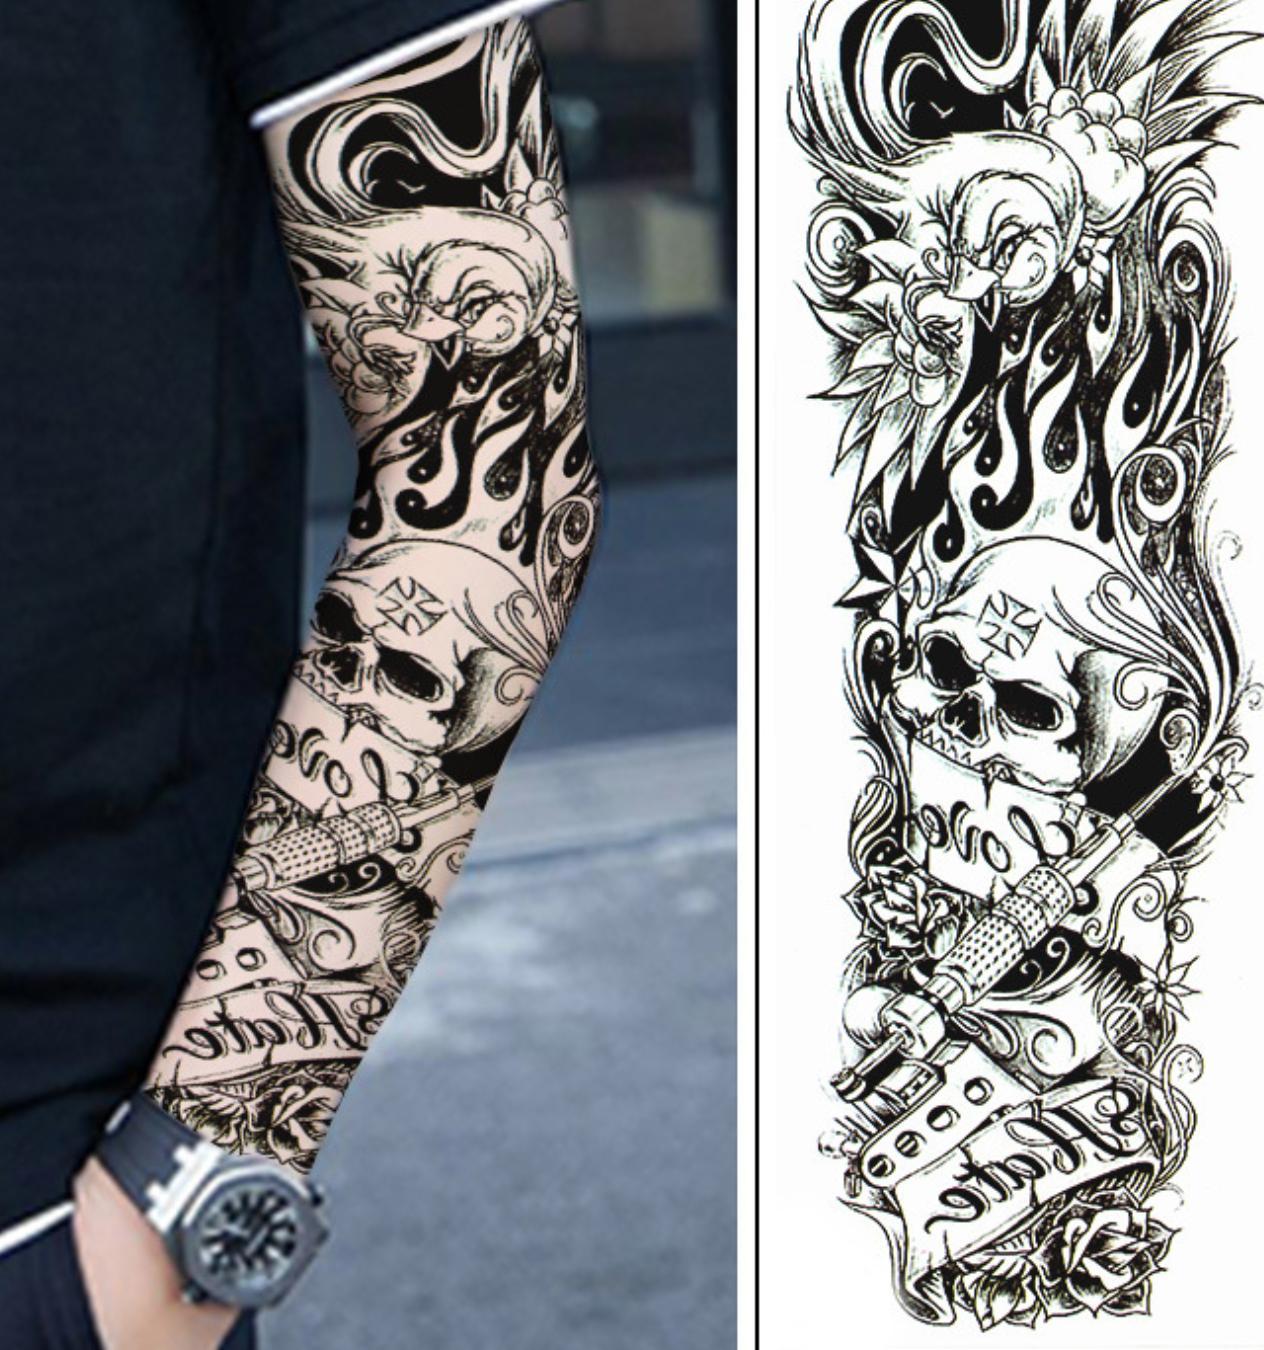 Găng tay hình xăm tattoo đẹp giá rẻ có bán sỉ tại TPHCM